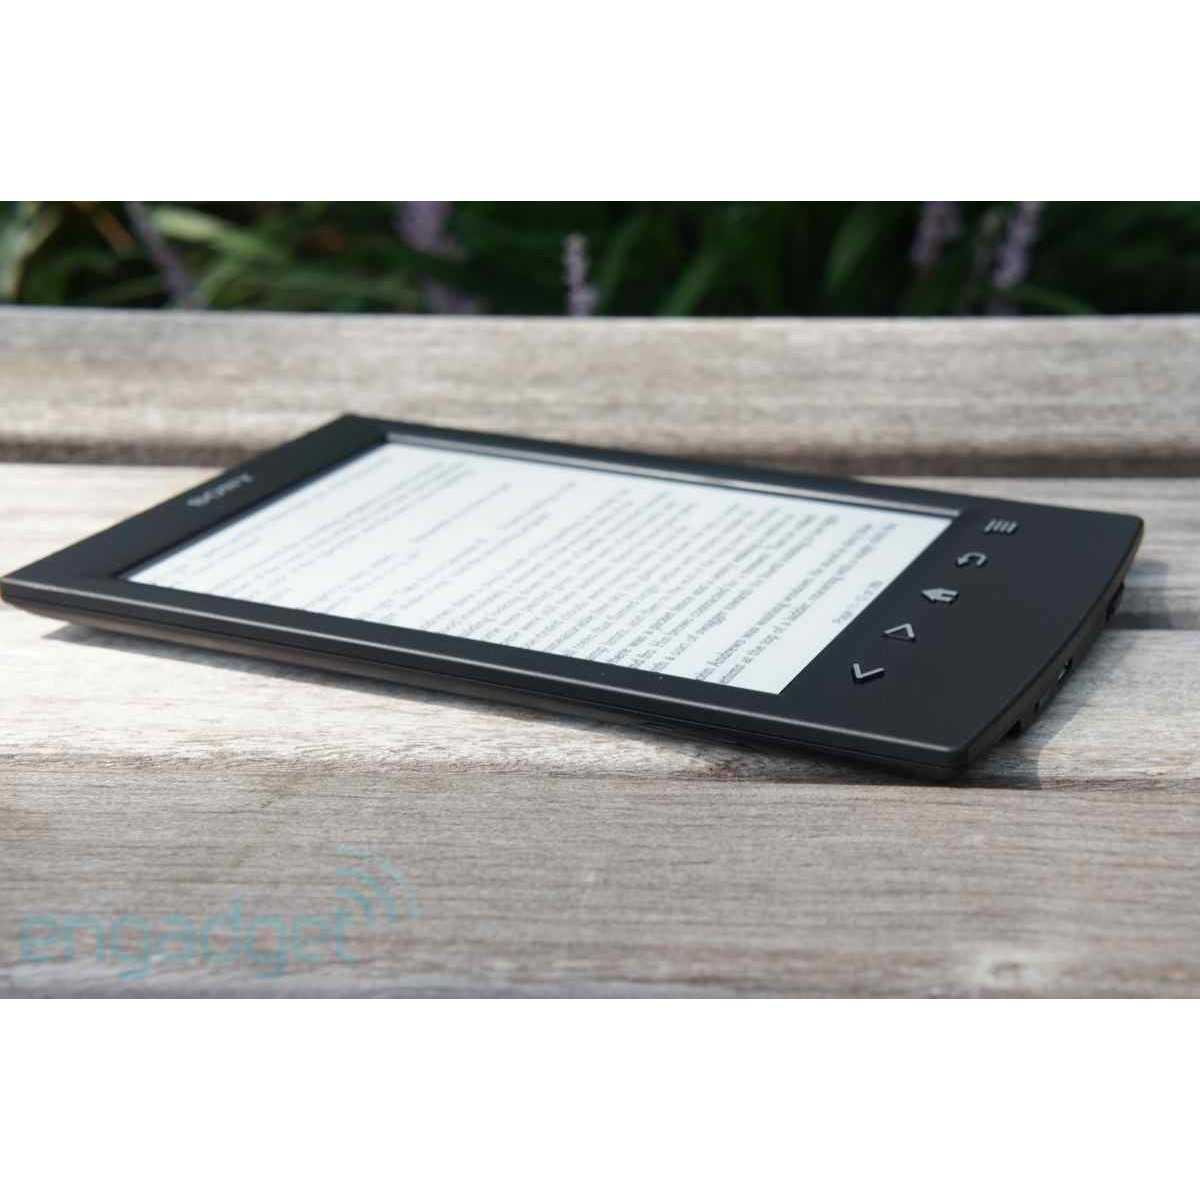 Электронная книга sony prs-300 — купить, цена и характеристики, отзывы